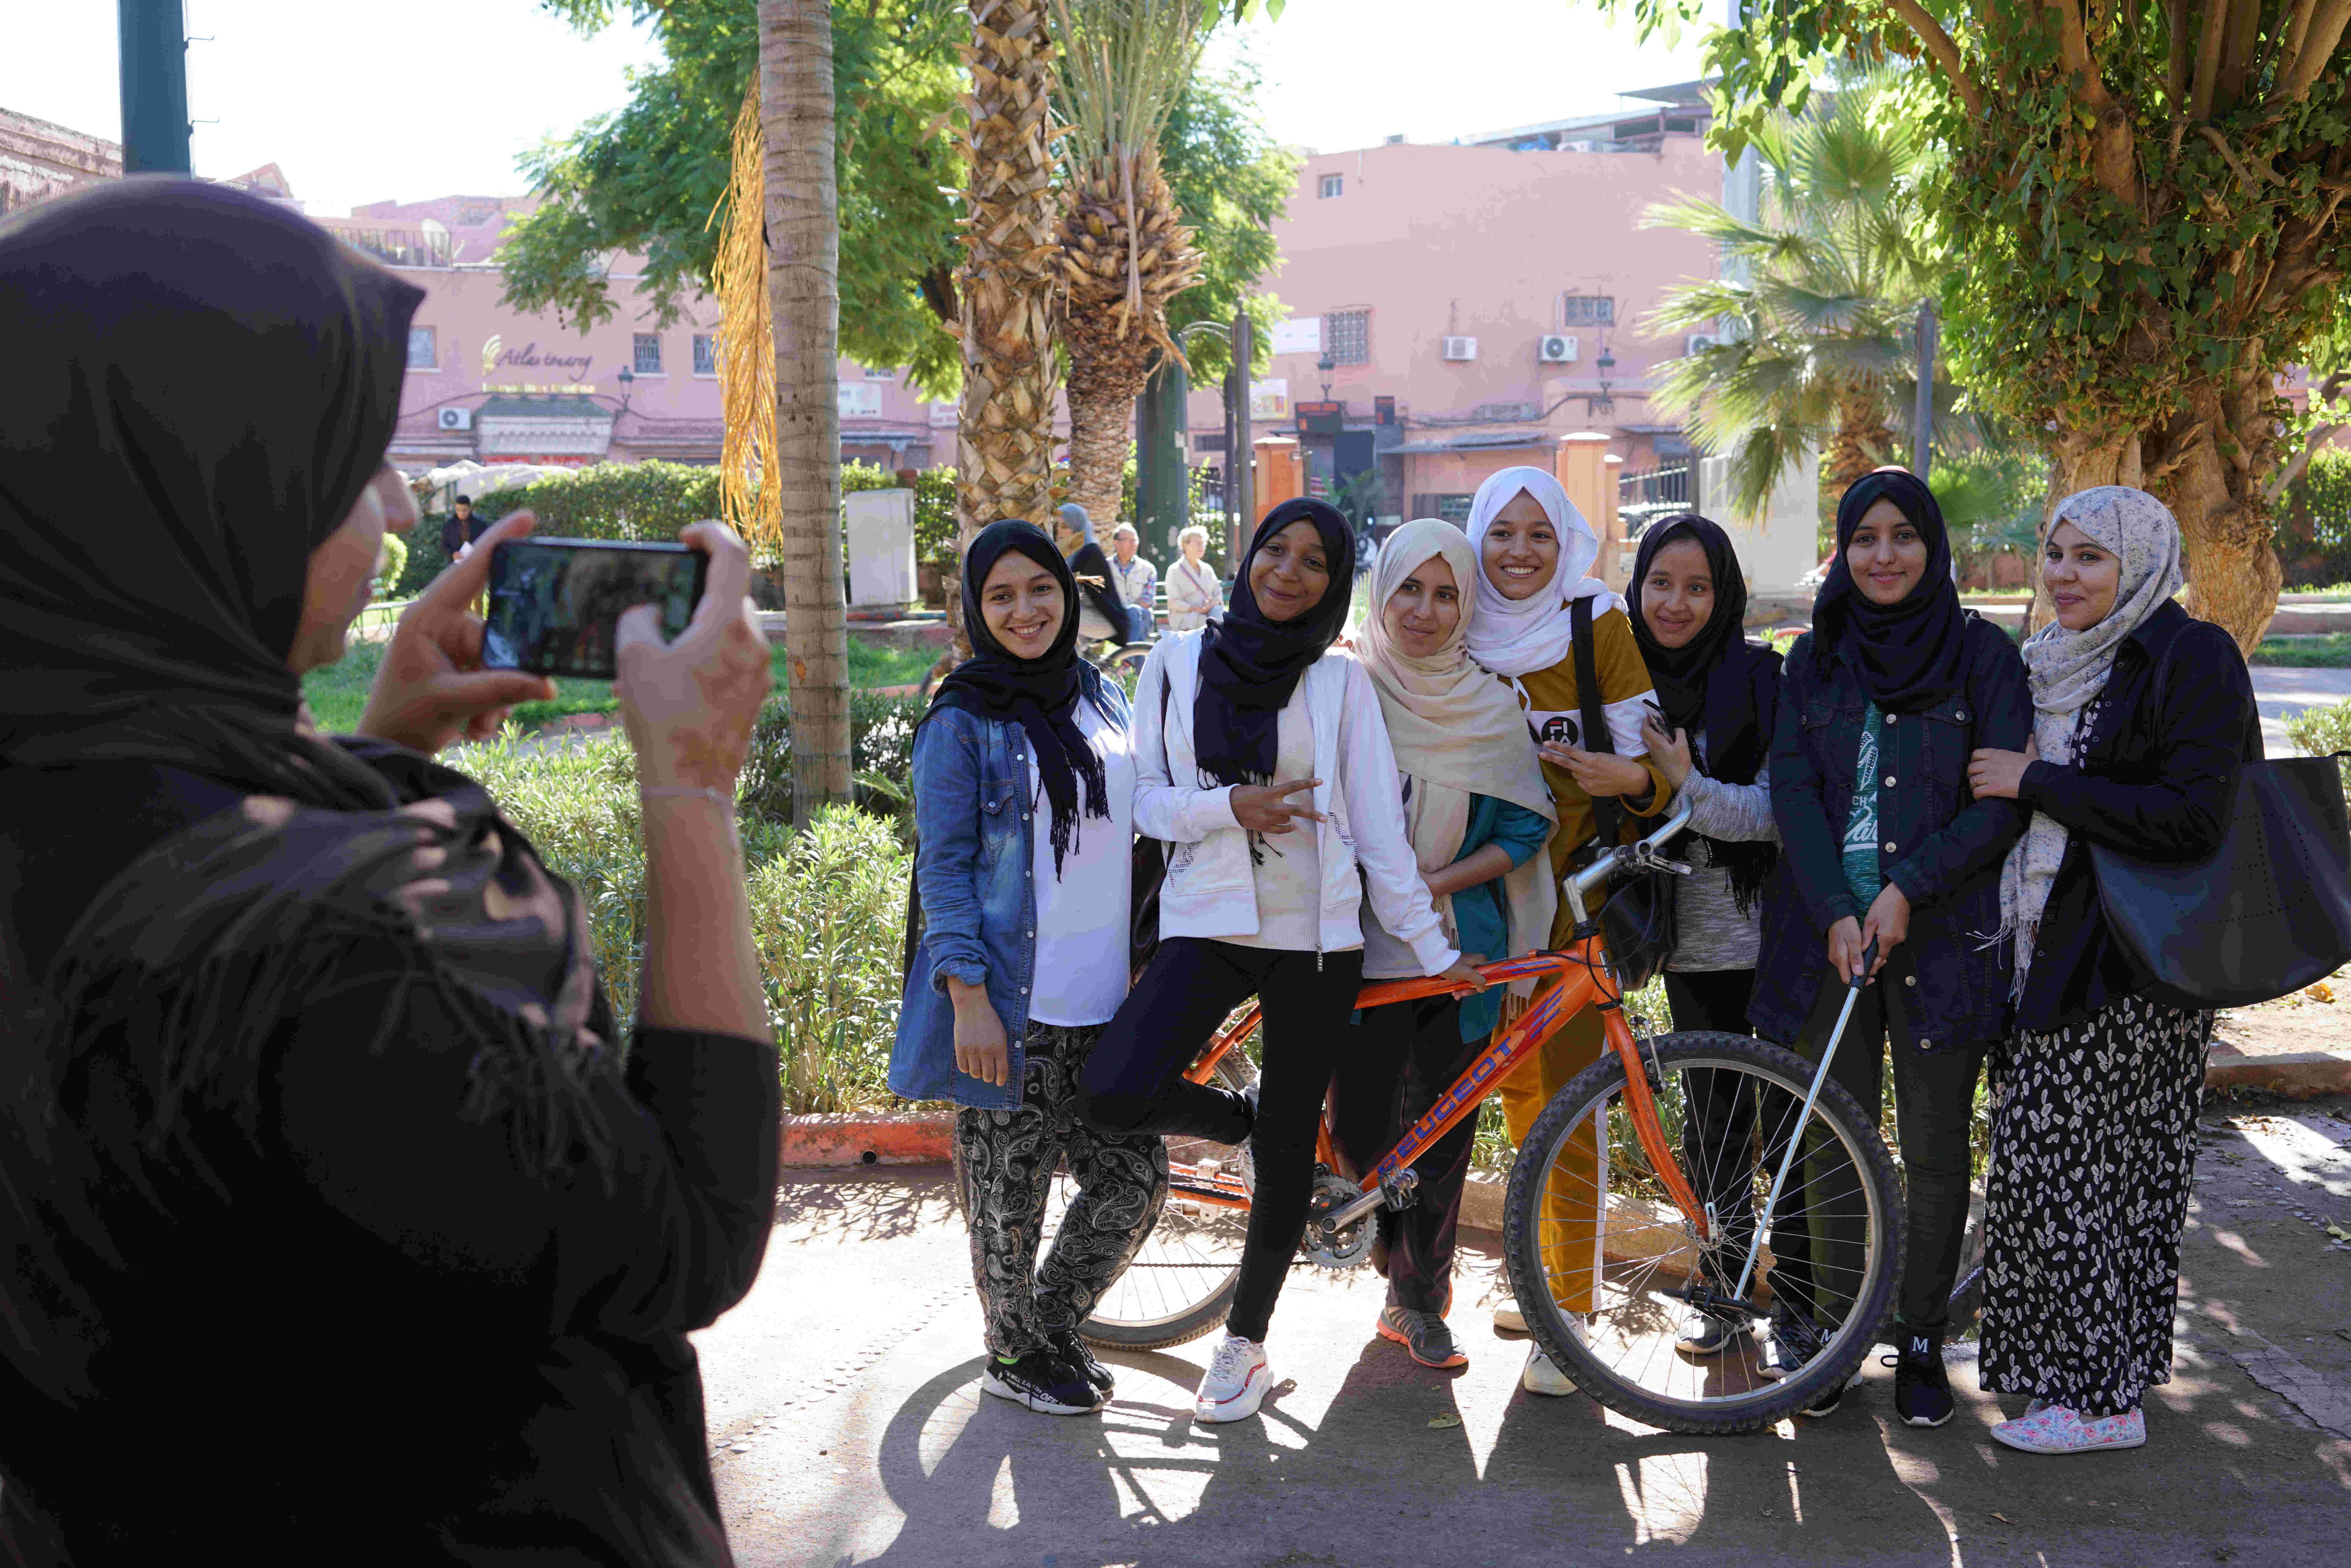 Junge Frauen posieren mit Fahrrad für ein Foto/Pikala Initiative in Marrakesch/Marokko; Foto: Marian Brehmer